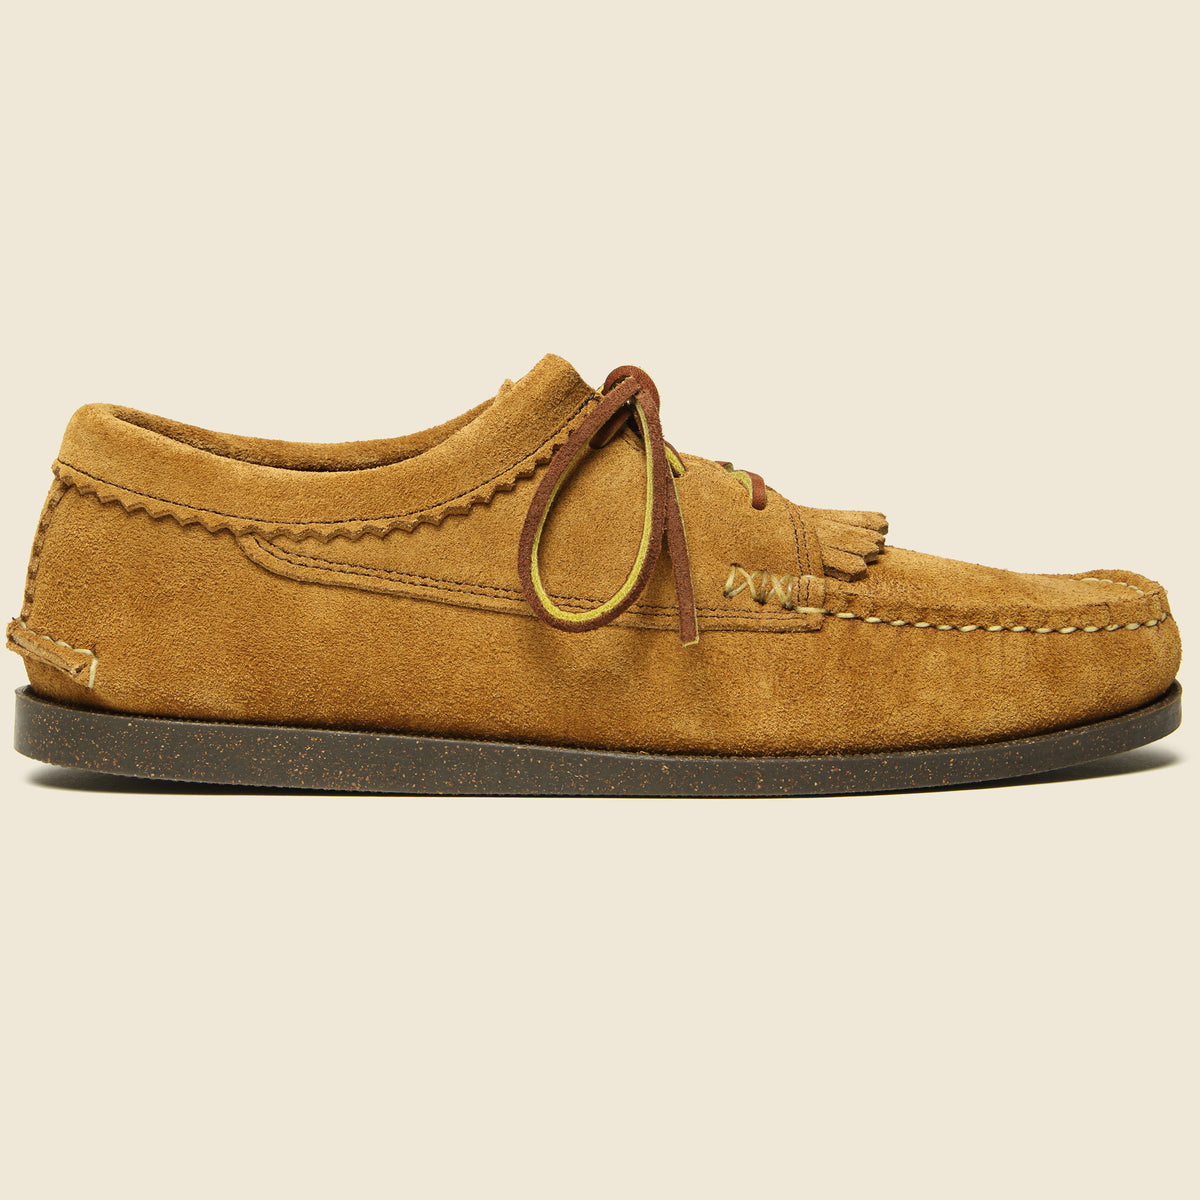 Blucher Shoe with Kiltie Camp Sole - Brown